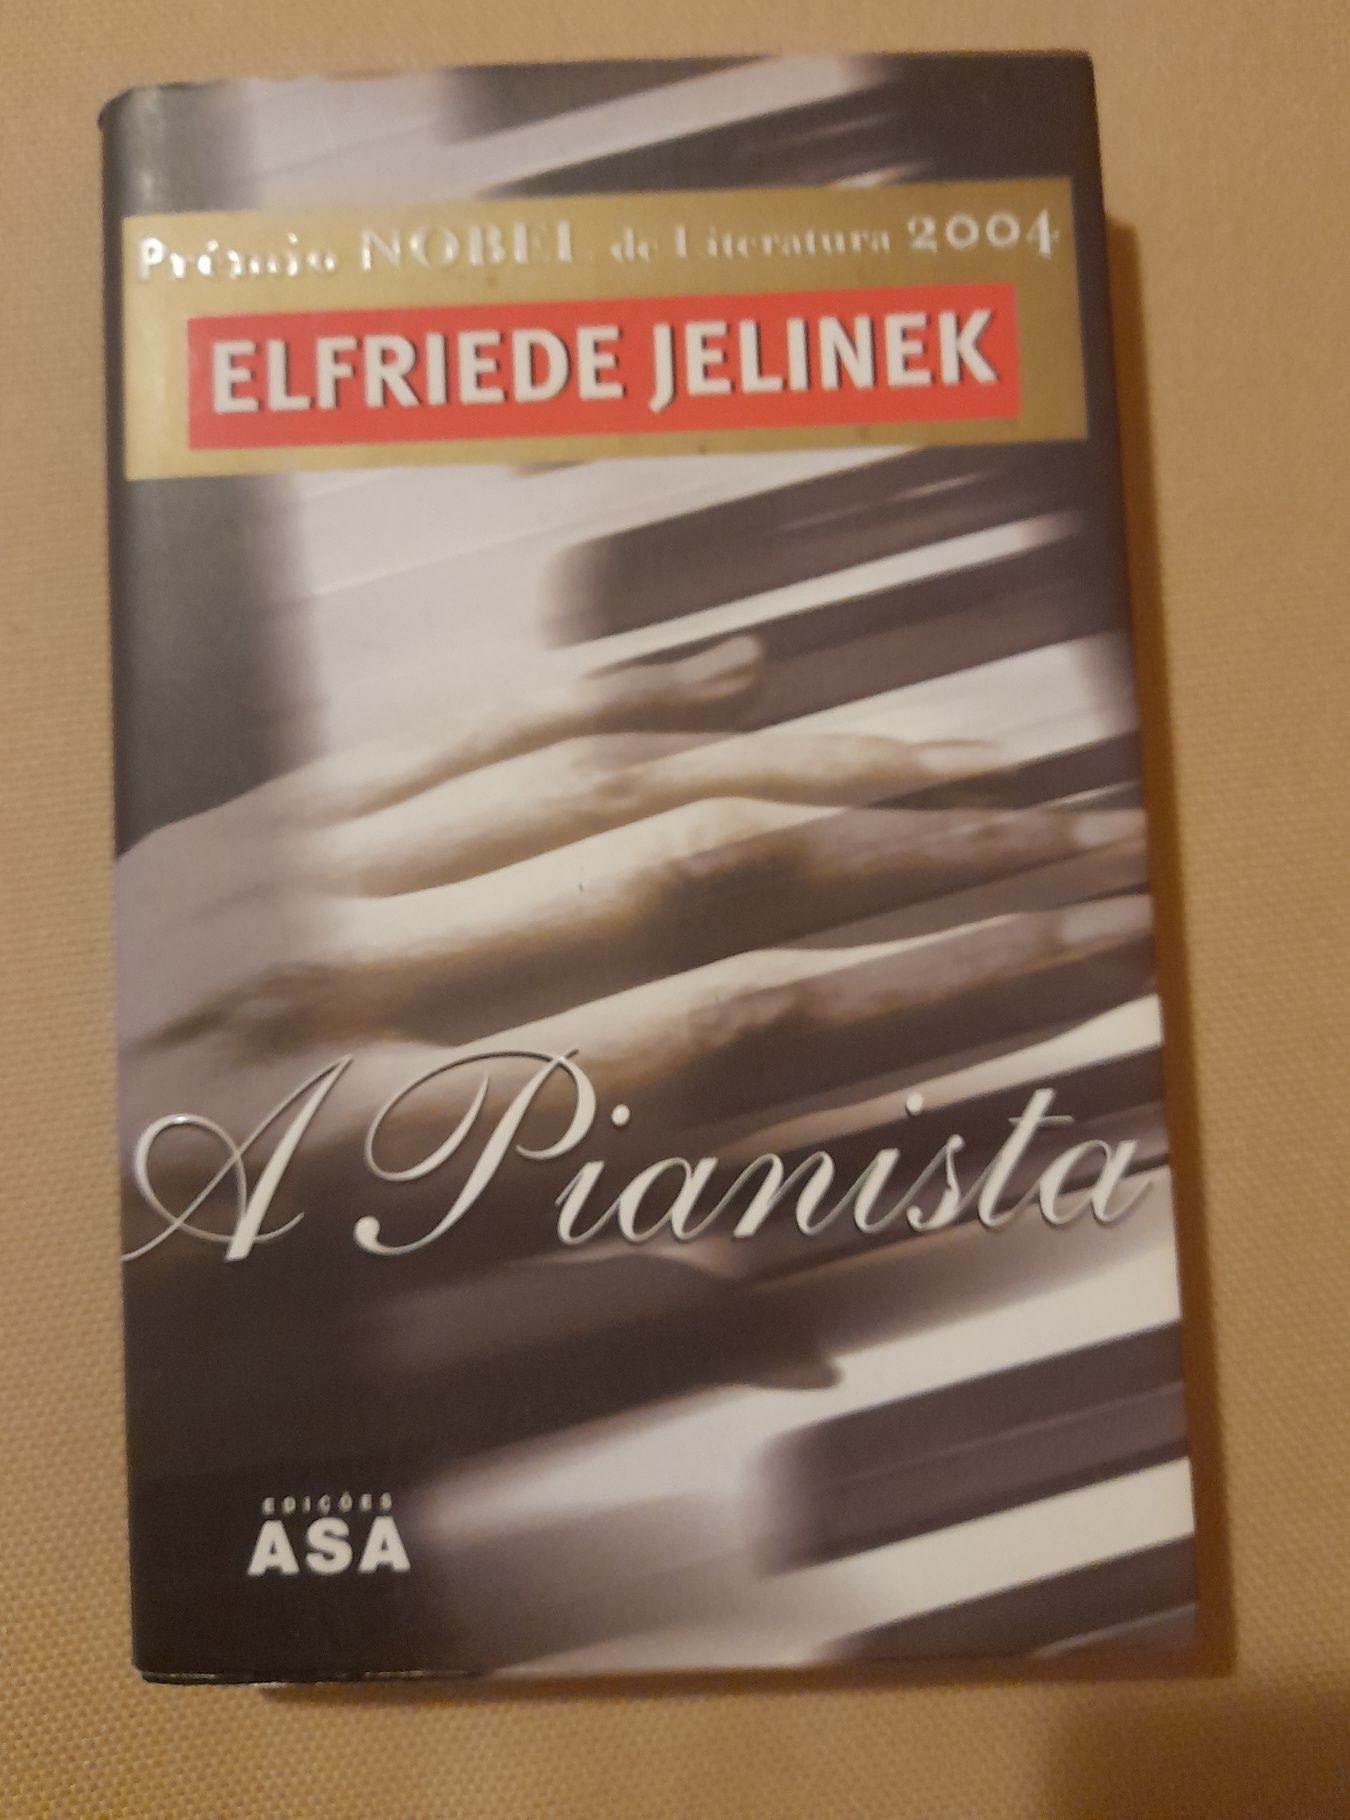 "A pianista" Elfriede Jelinek